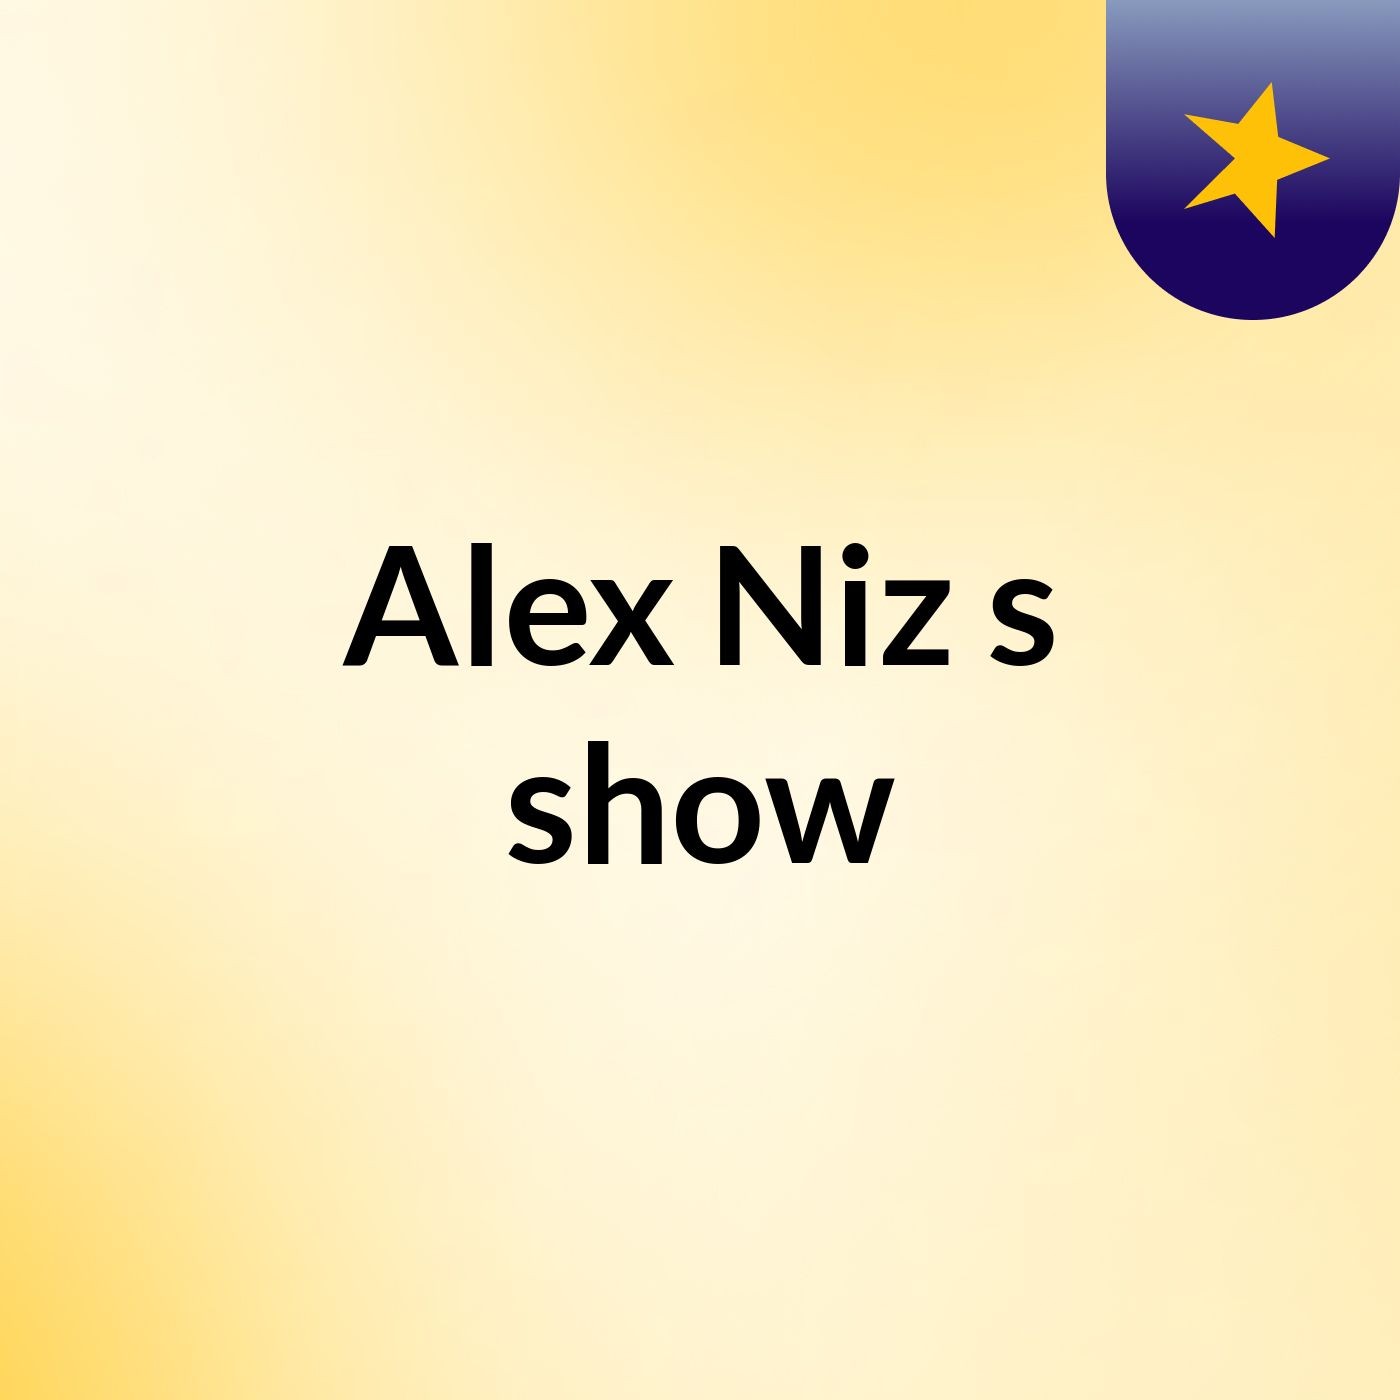 Alex Niz's show